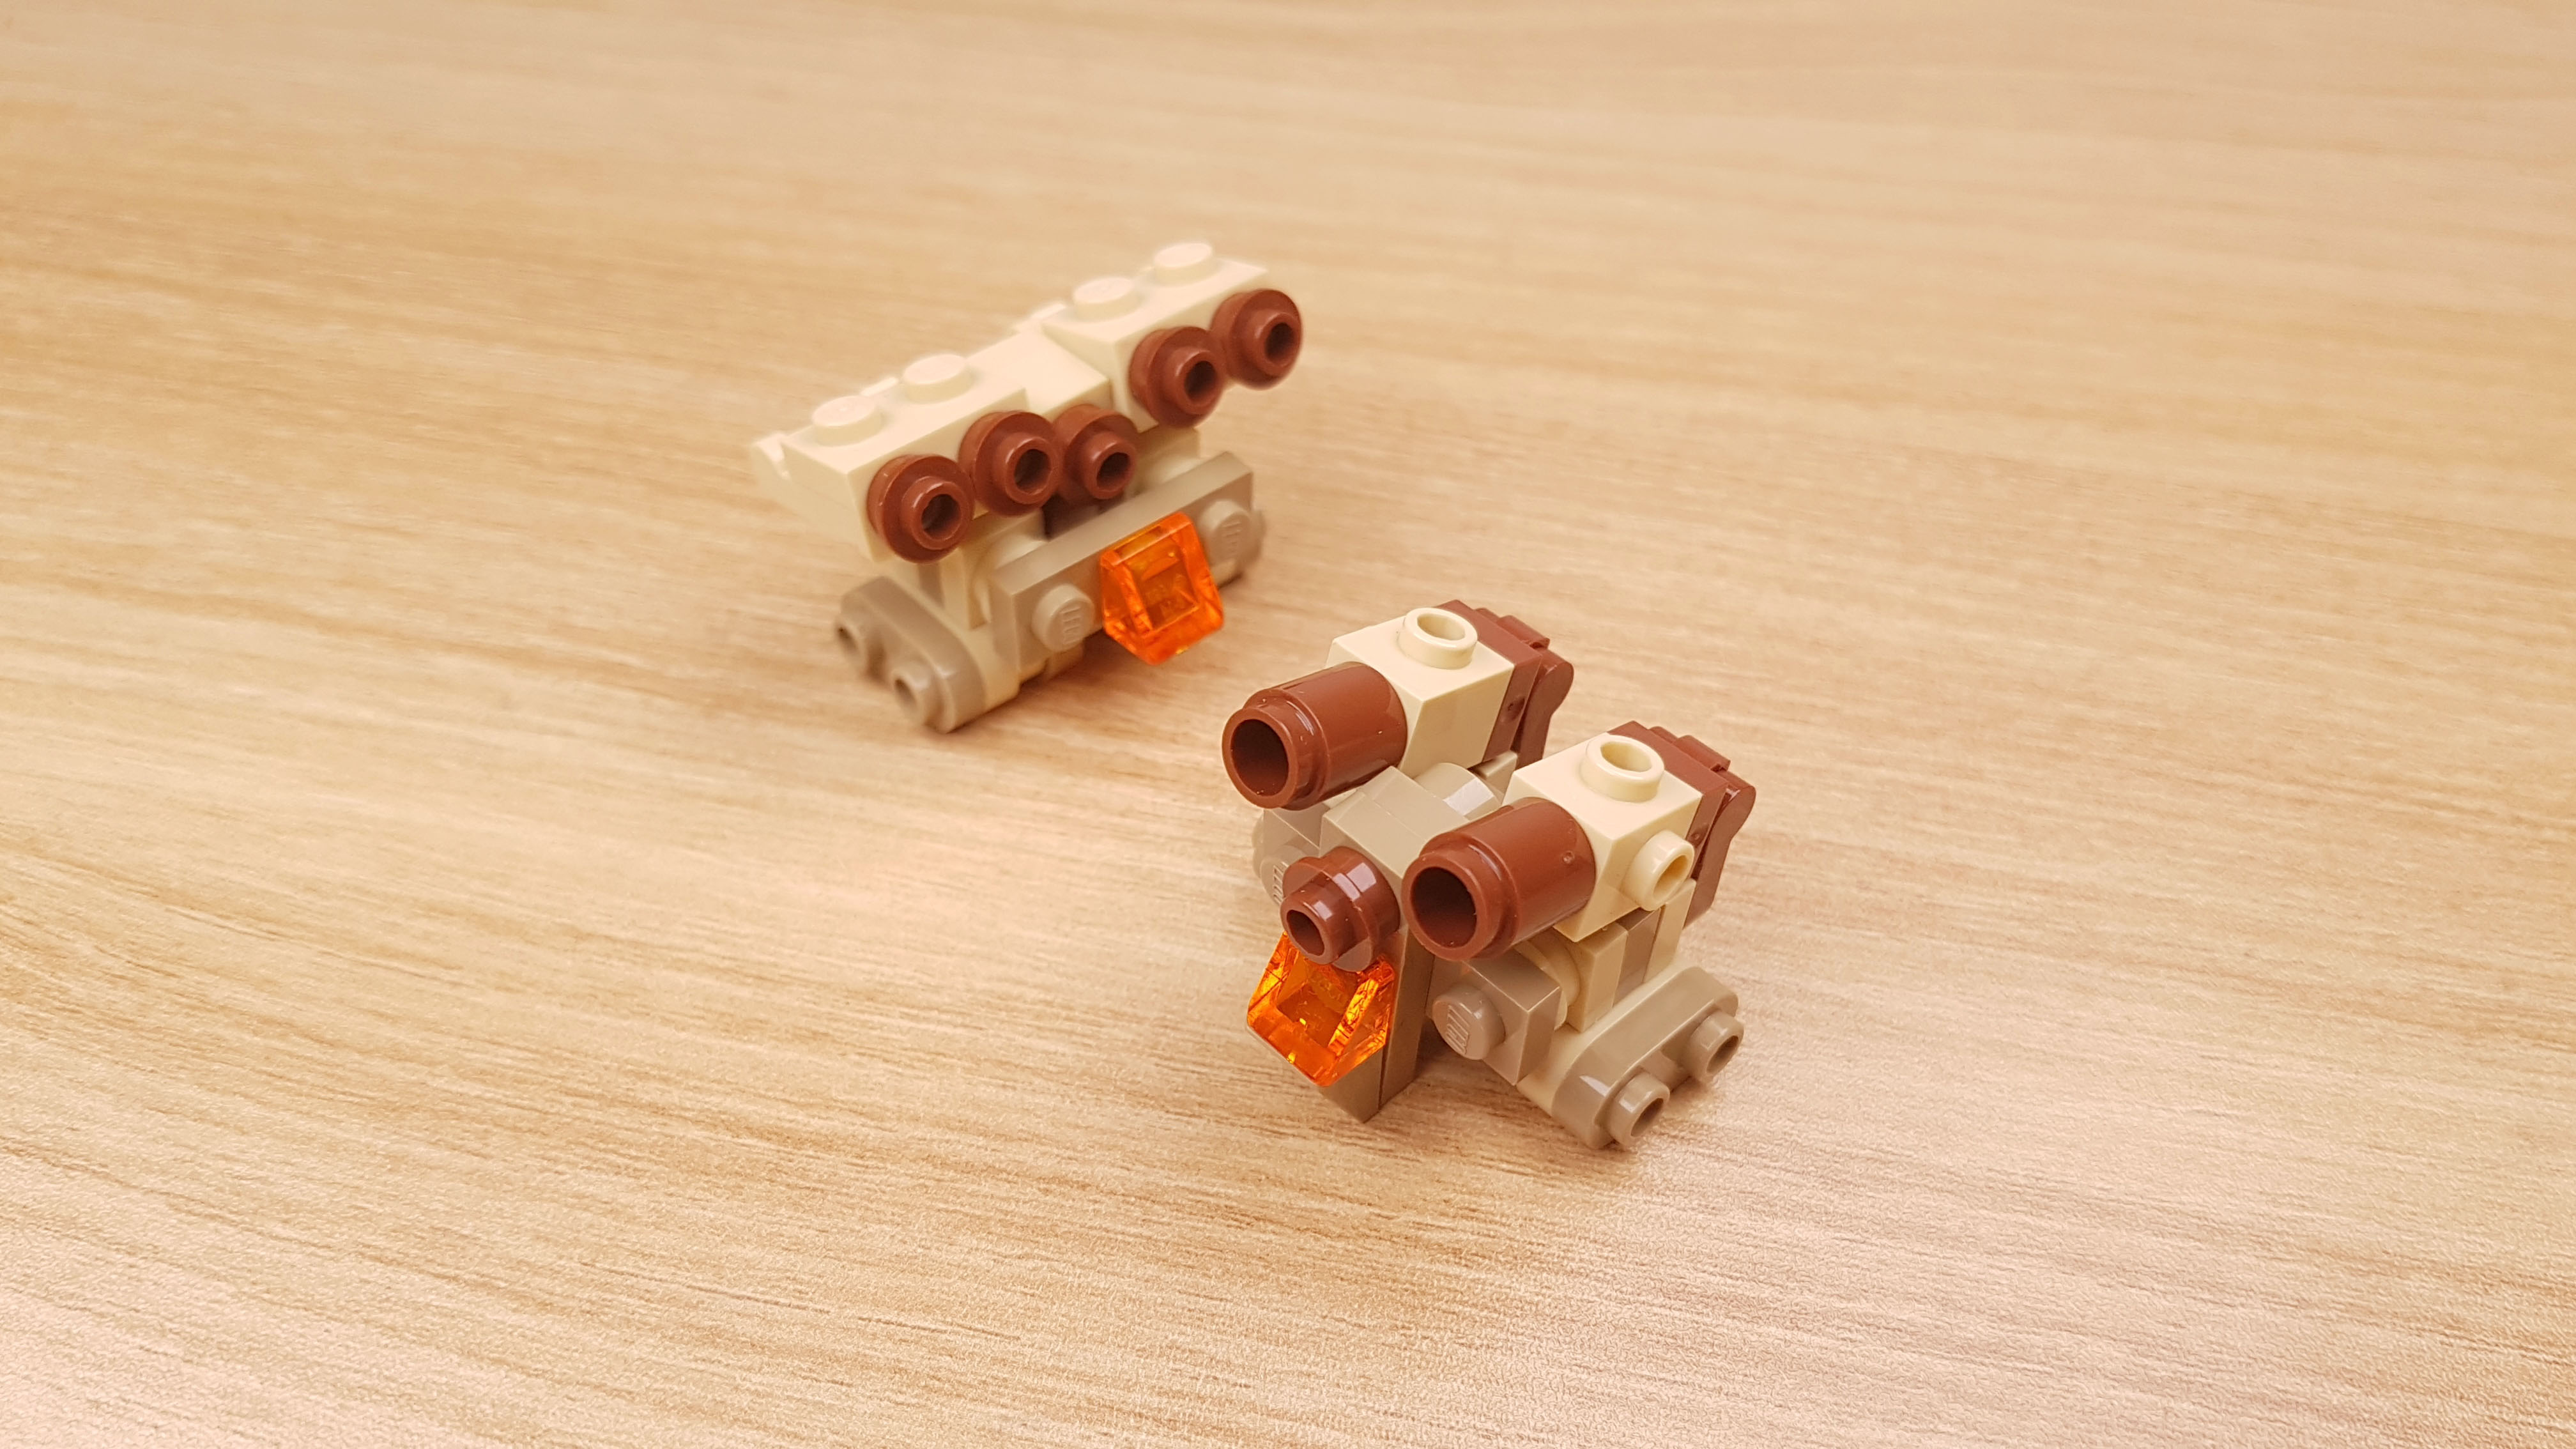 砂漠作戦用で開発した2段合体ミニレゴロボ - 「タン・ボット」
 2 - 変身,変身ロボ,レゴ変身ロボ